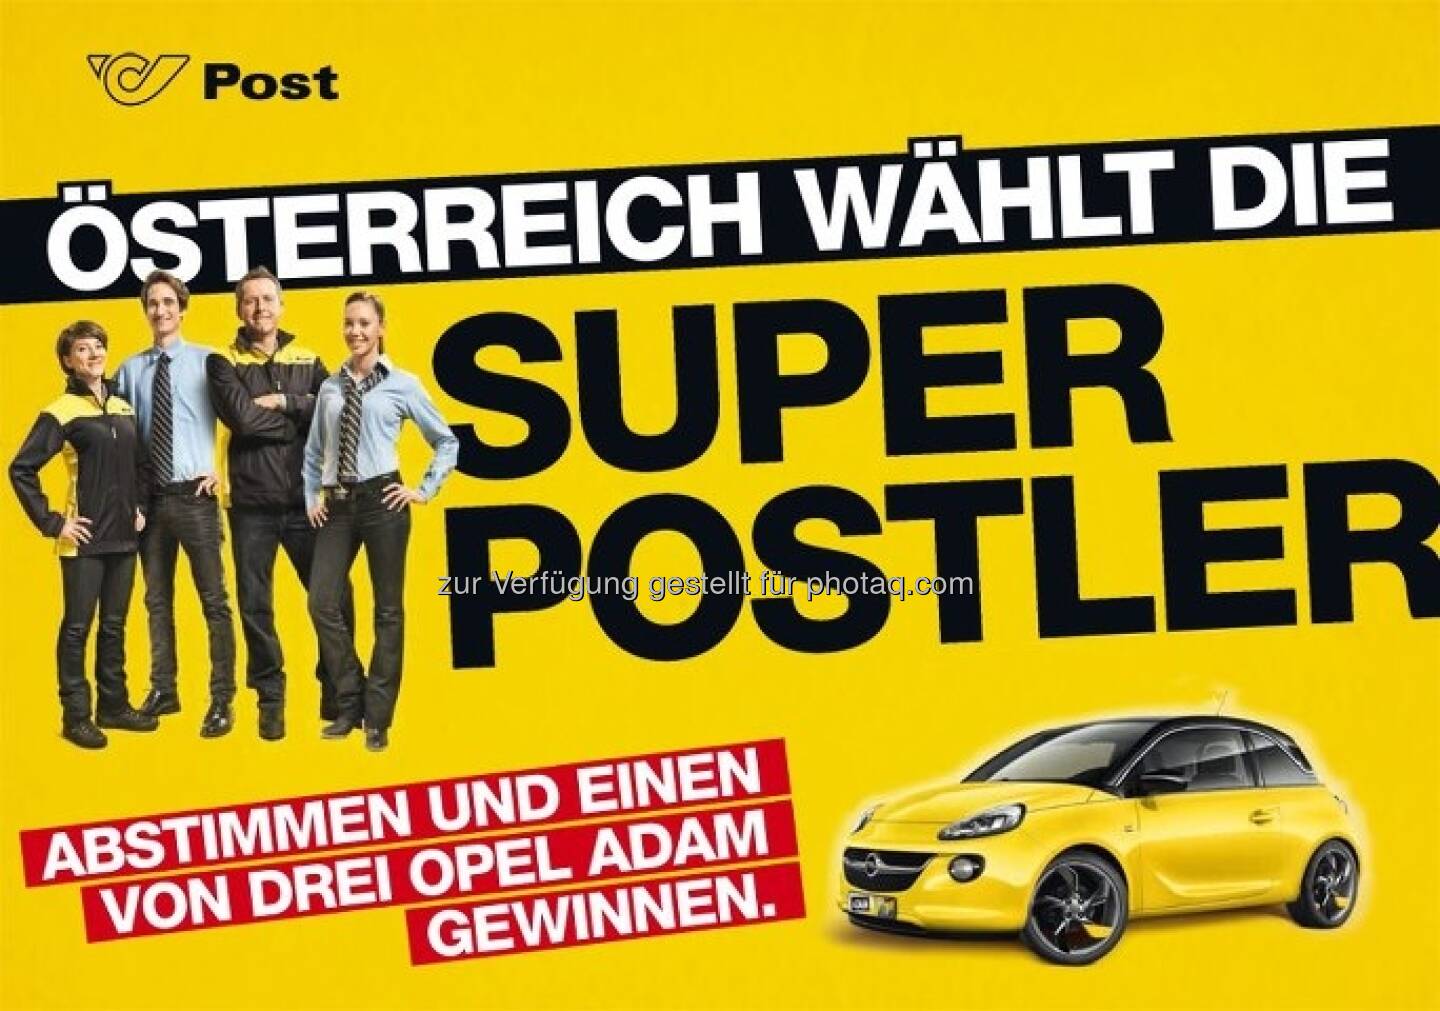 Österreich wählt die Super Postler (c) Post